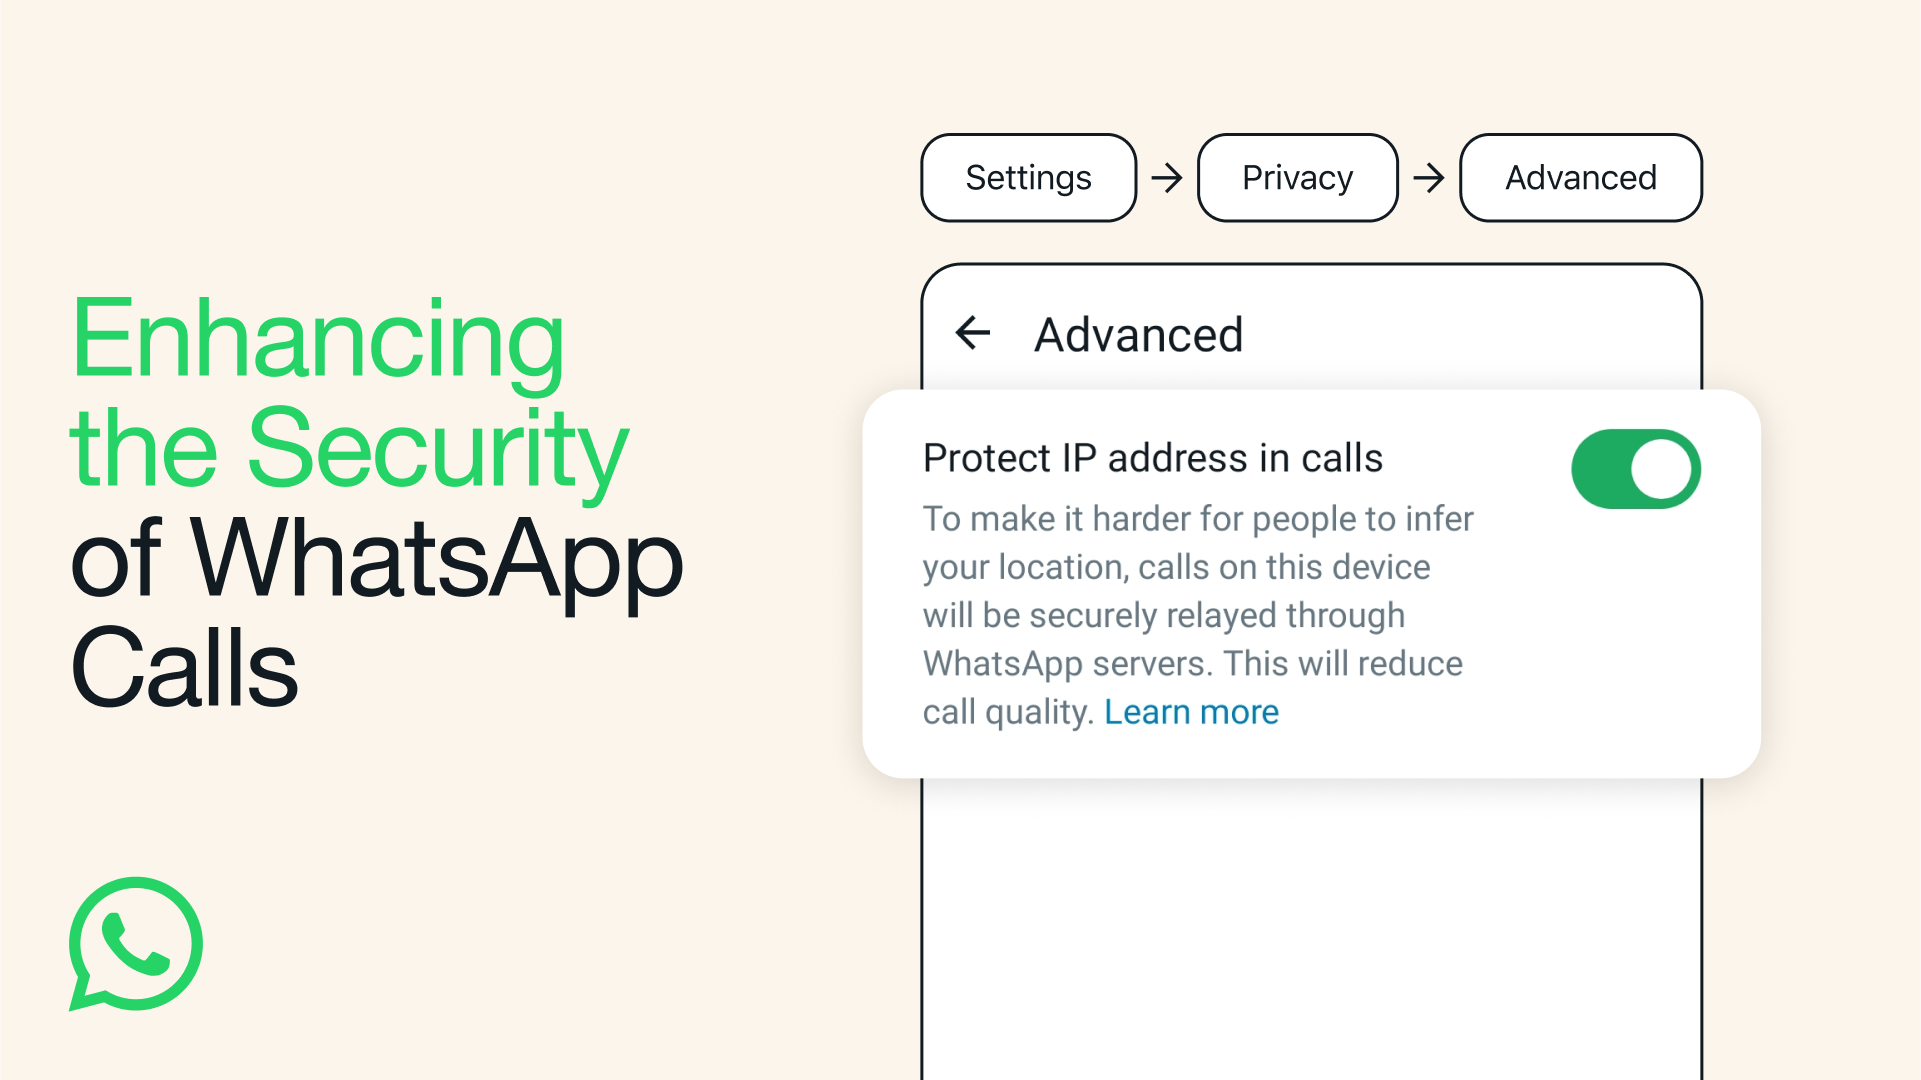 Les utilisateurs de WhatsApp peuvent désormais masquer leur adresse IP lors des appels